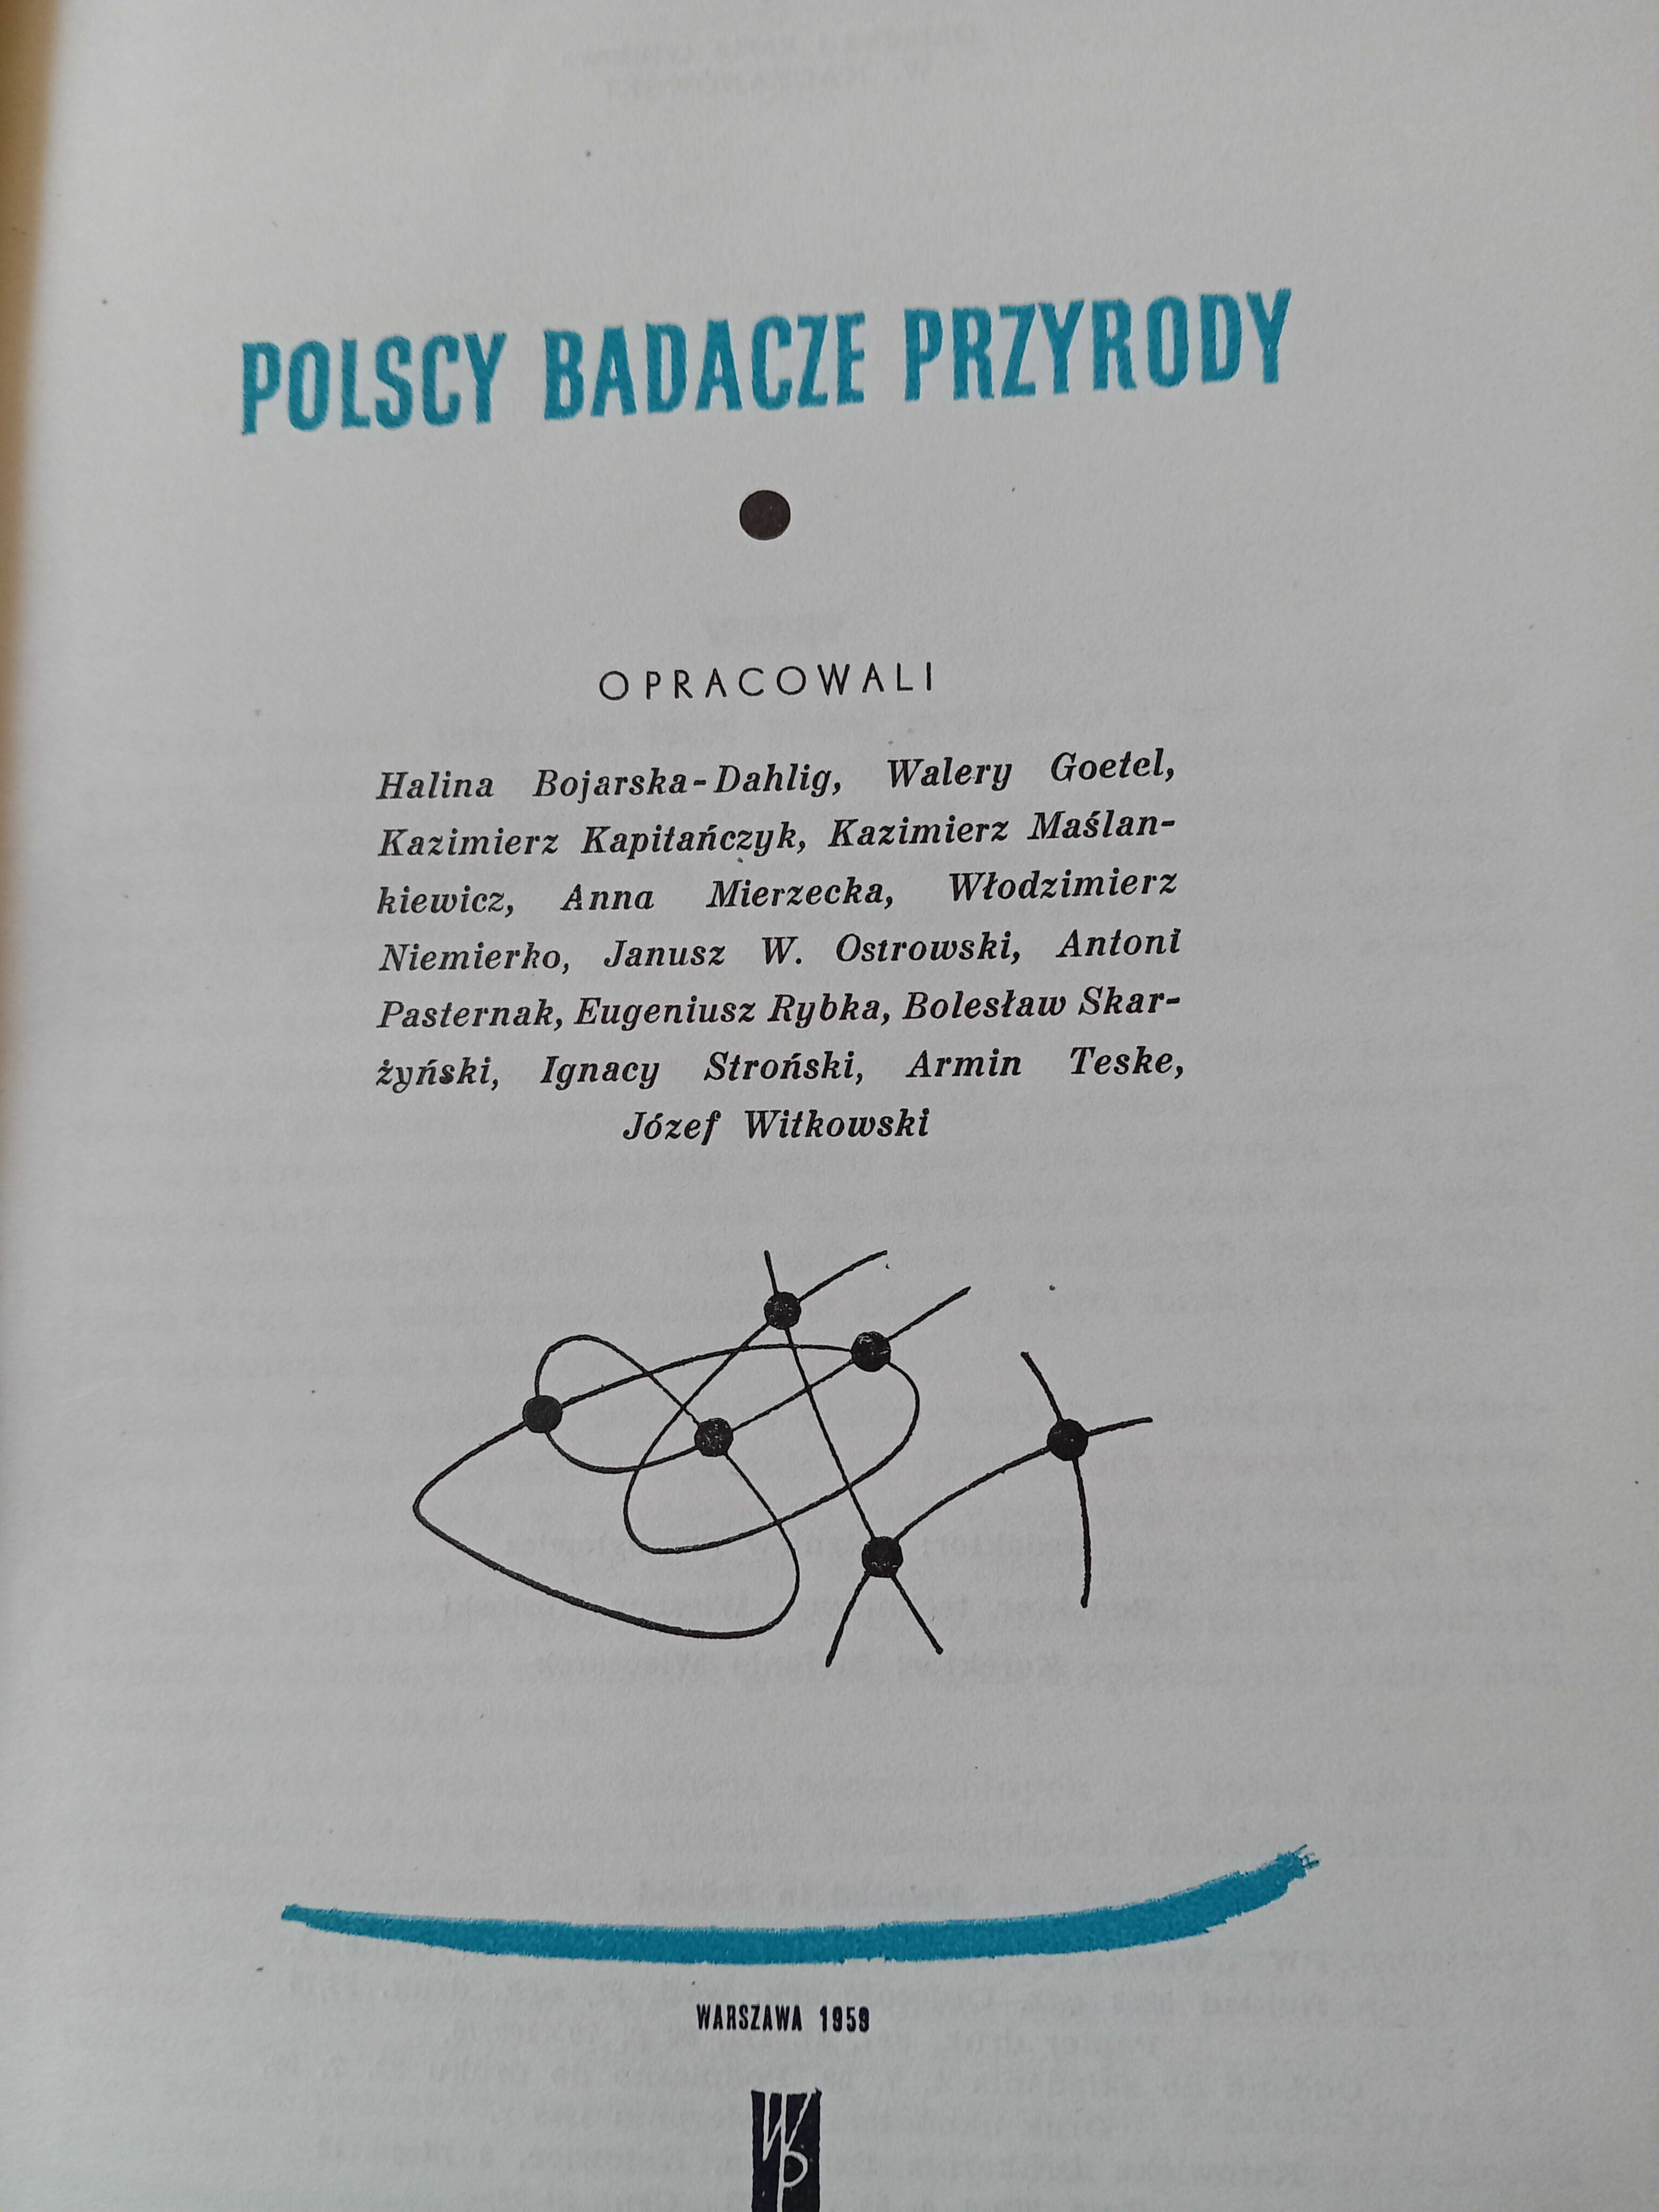 Polscy badacze przyrody.